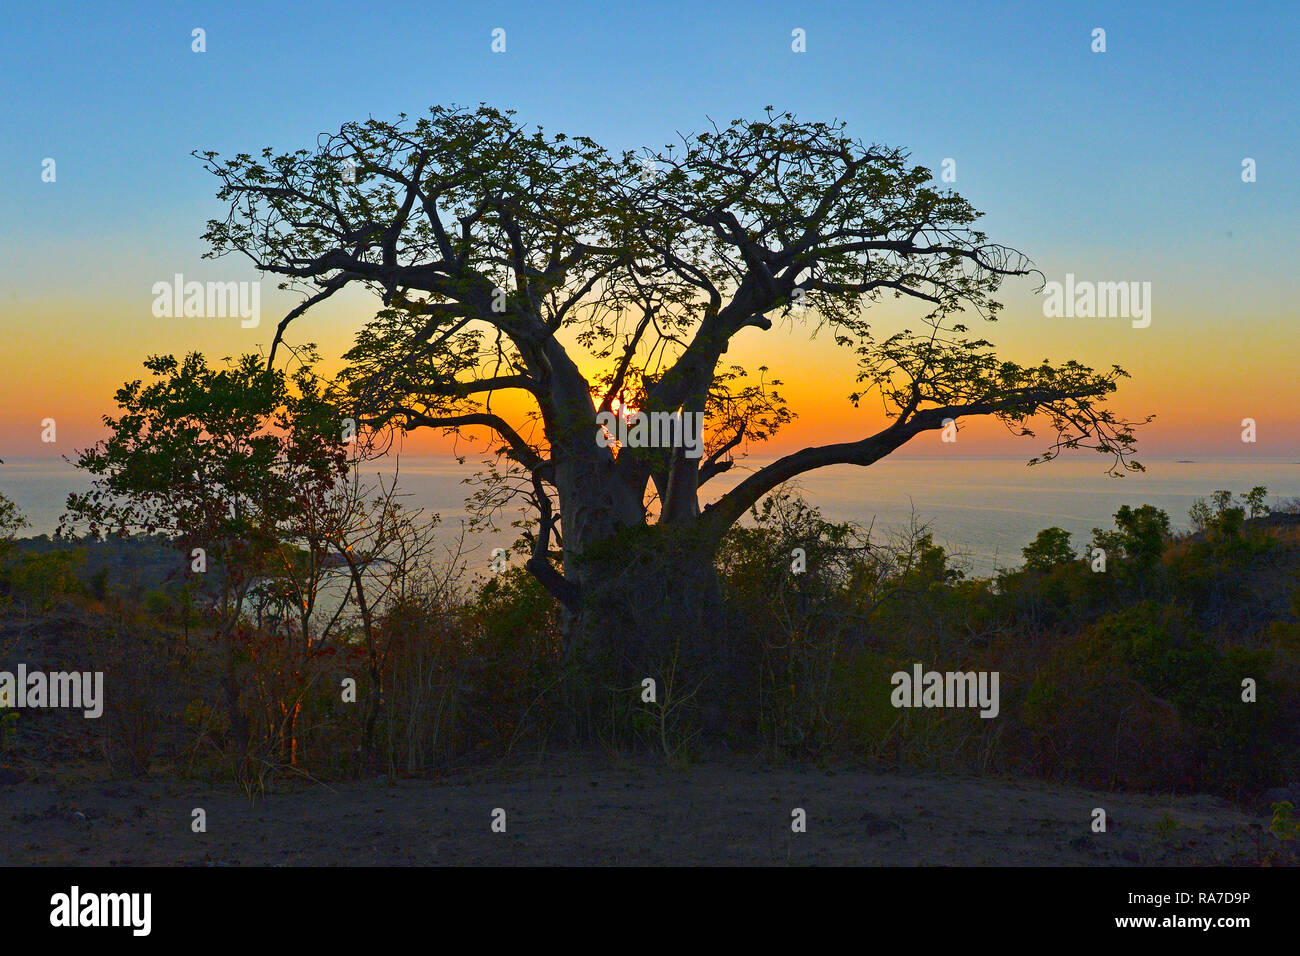 Le Baobab (Adansonia digitata) au coucher du soleil, le Malawi, l'Afrique Banque D'Images